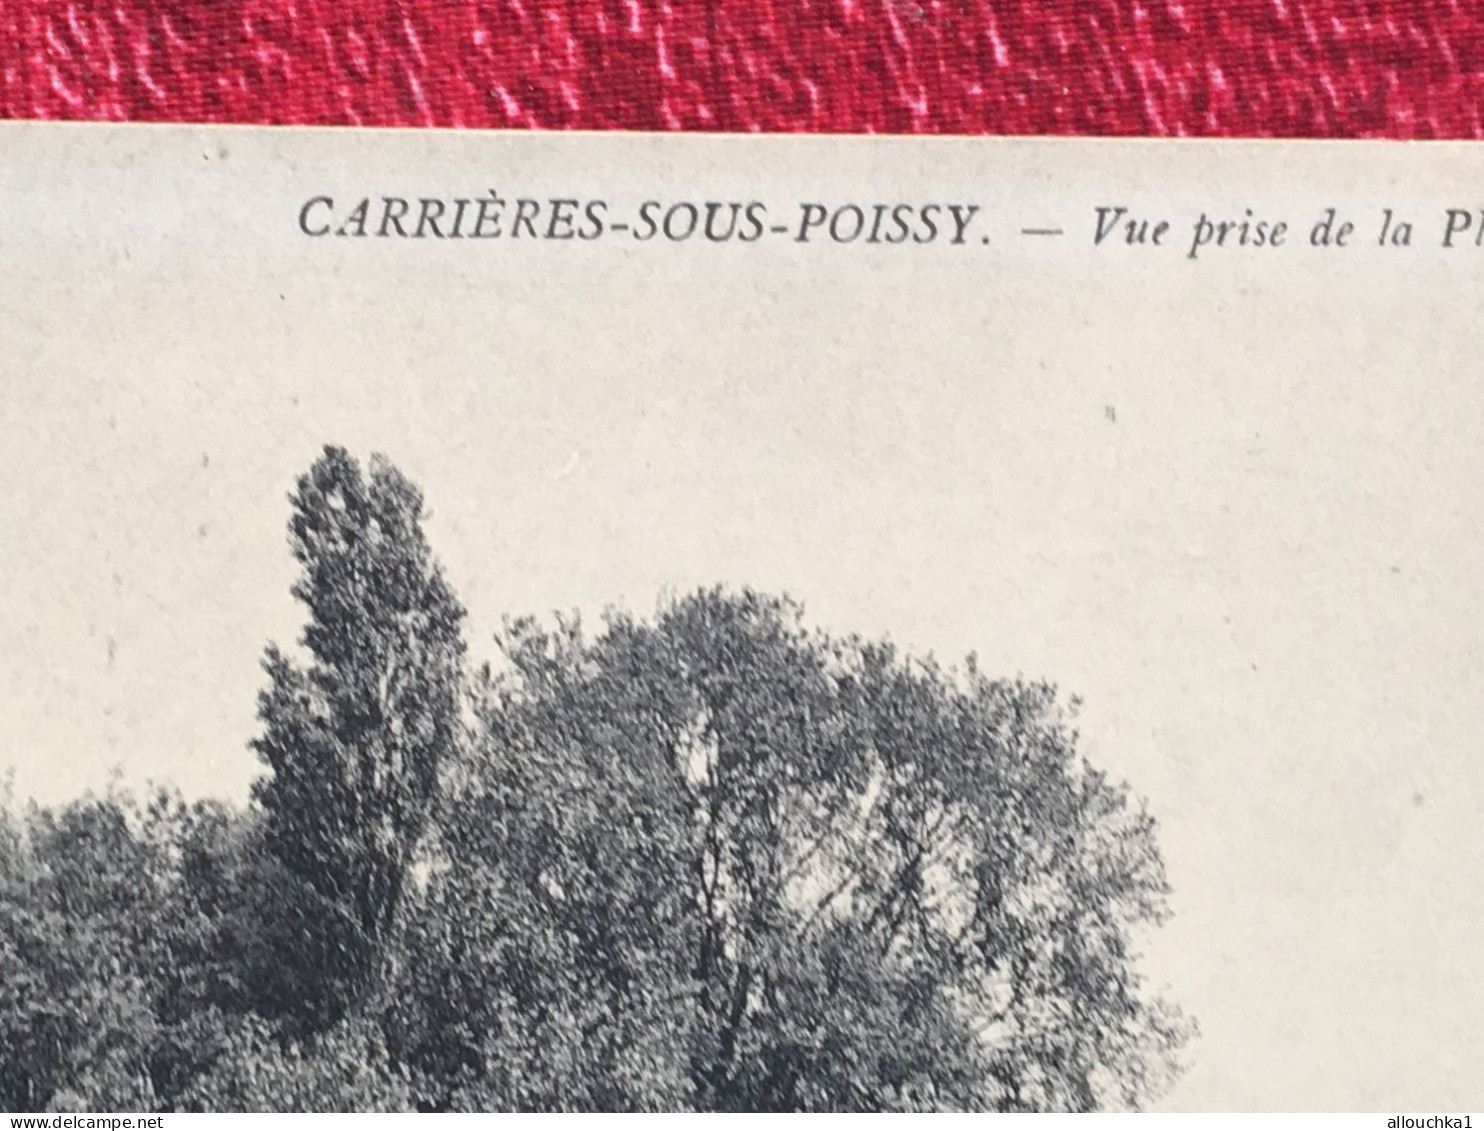 Carrières-sous-Poissy-[78] Yvelines - Carte Postale /CPA : Vue Prise De La Plaine Région Île-de-France - Carrieres Sous Poissy